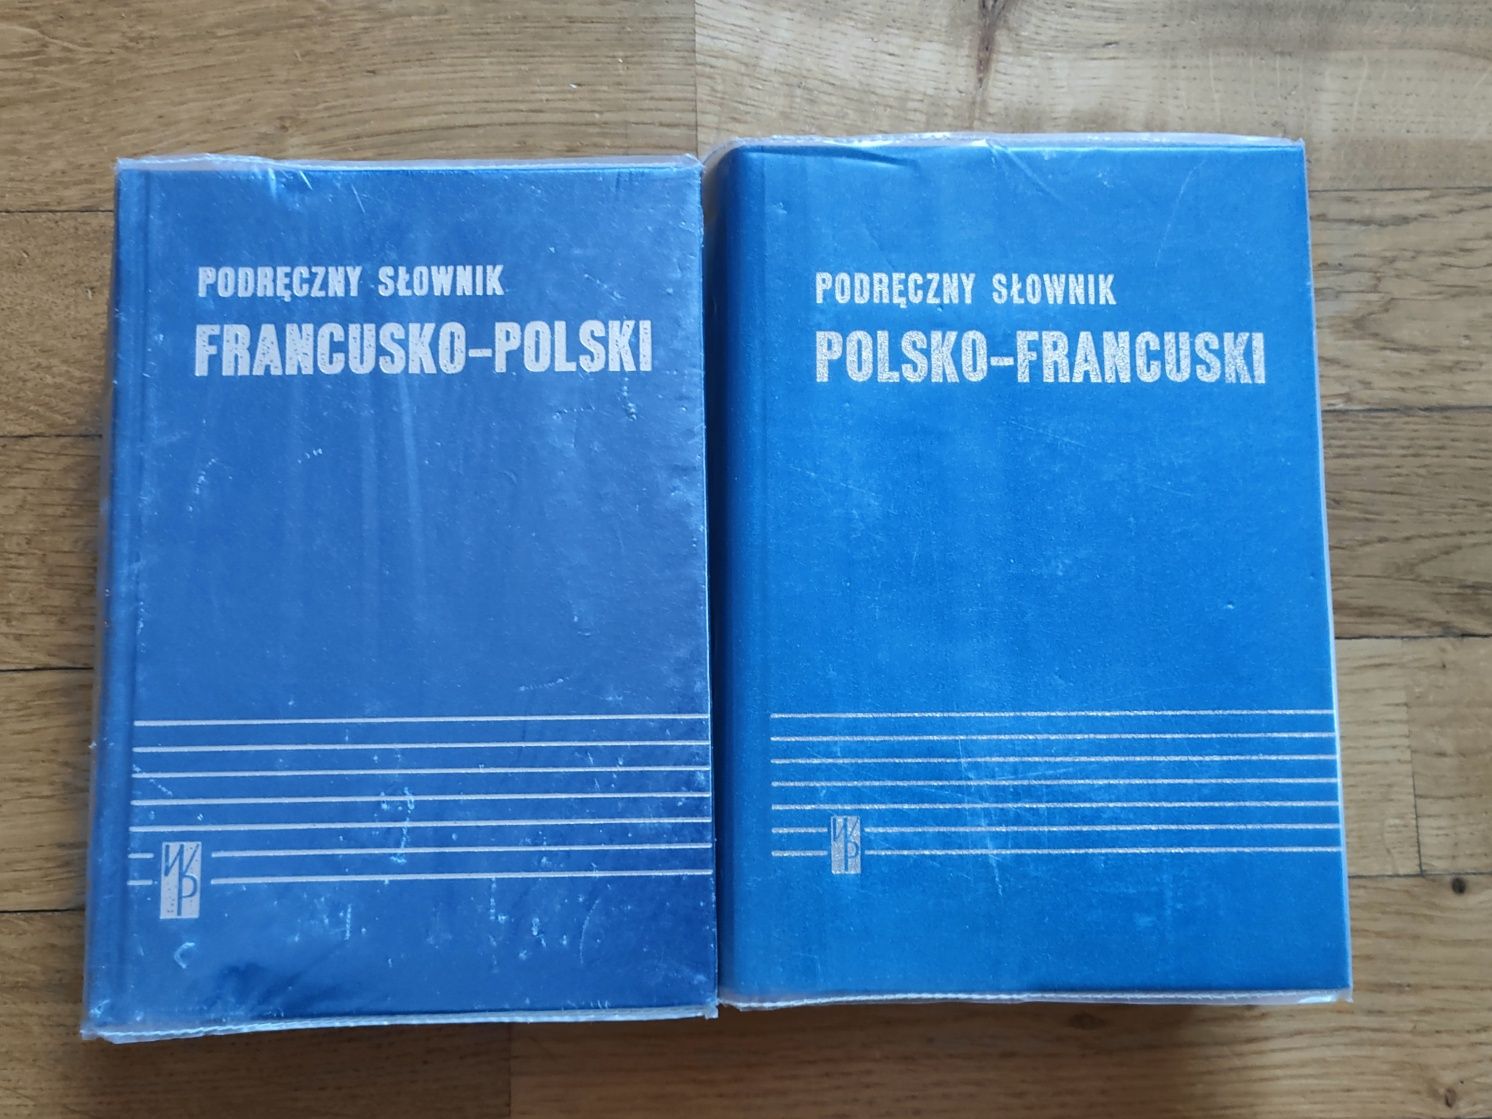 Podręczny Slownik  francusko-polski oraz polsko-francuski